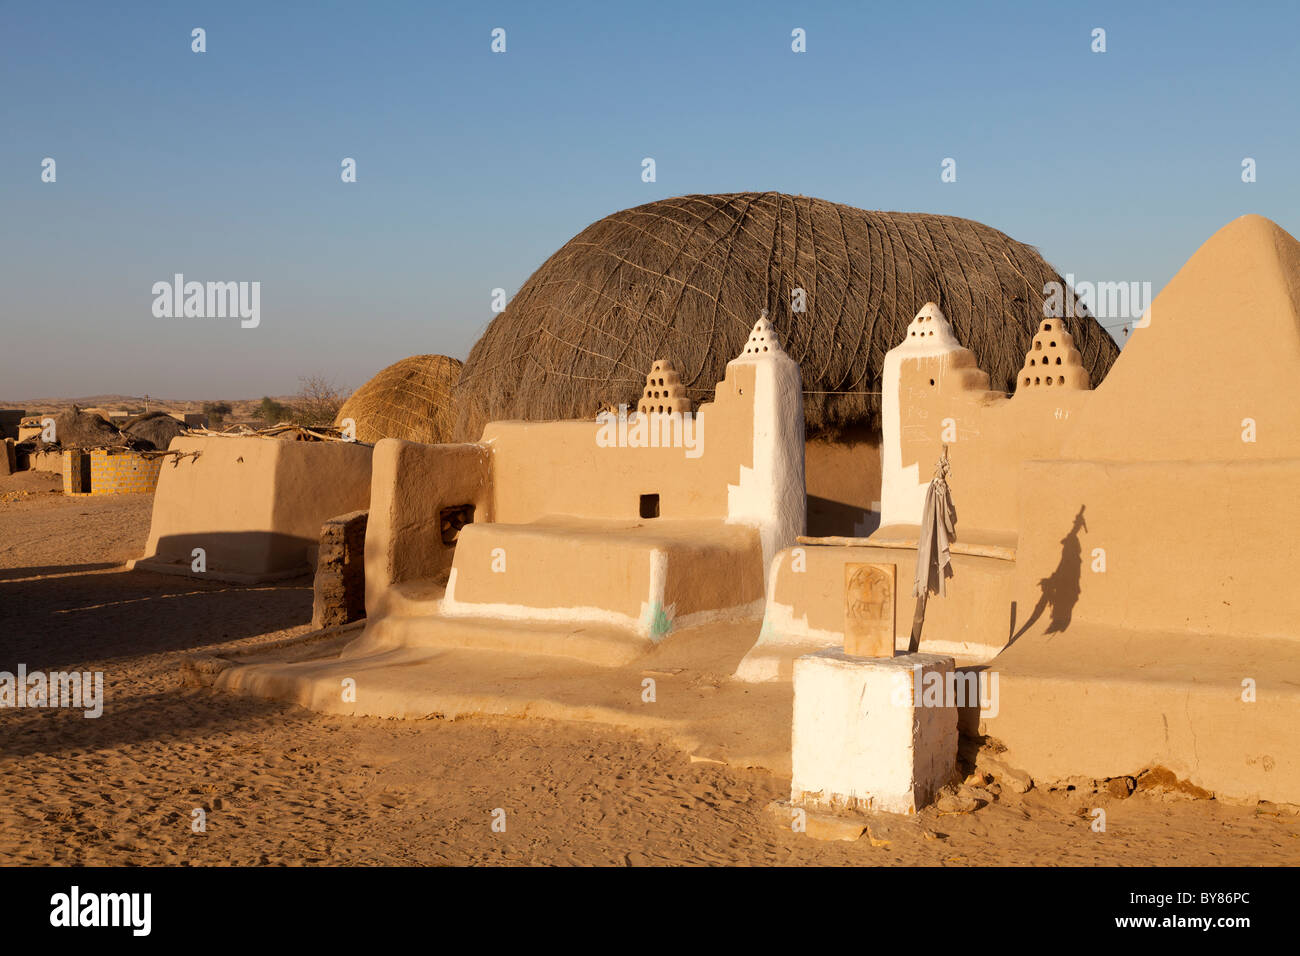 La India, Rajastán, Desierto de Thar, Tradicional casa del desierto Foto de stock